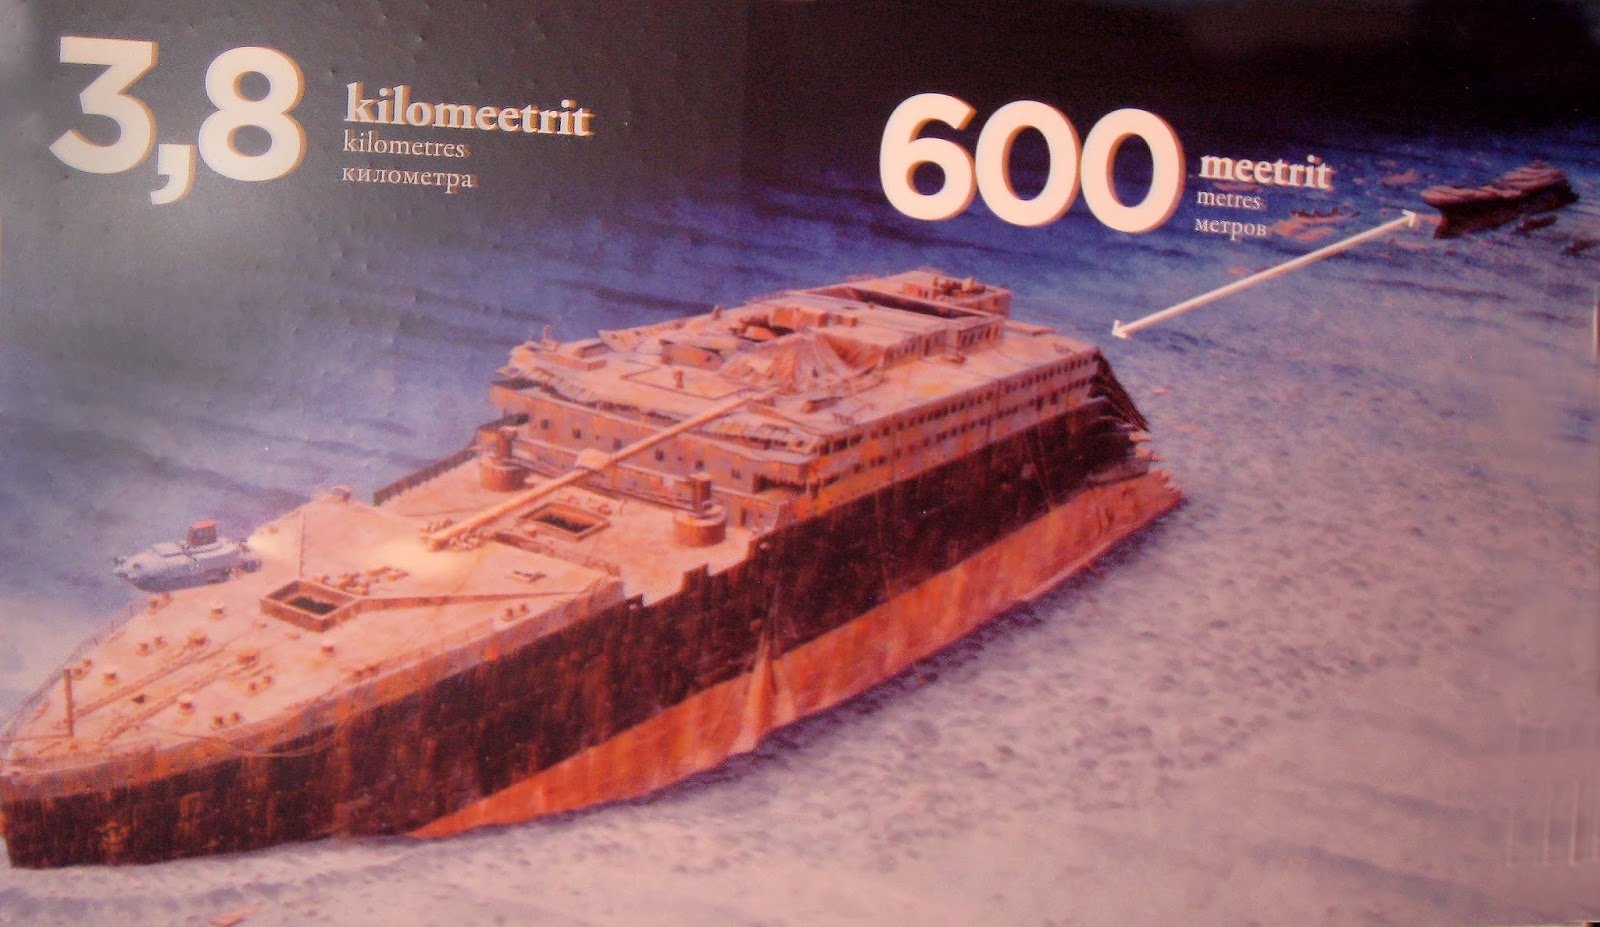 Выставка в Таллинне.Титаник.Истории, находки, легенды